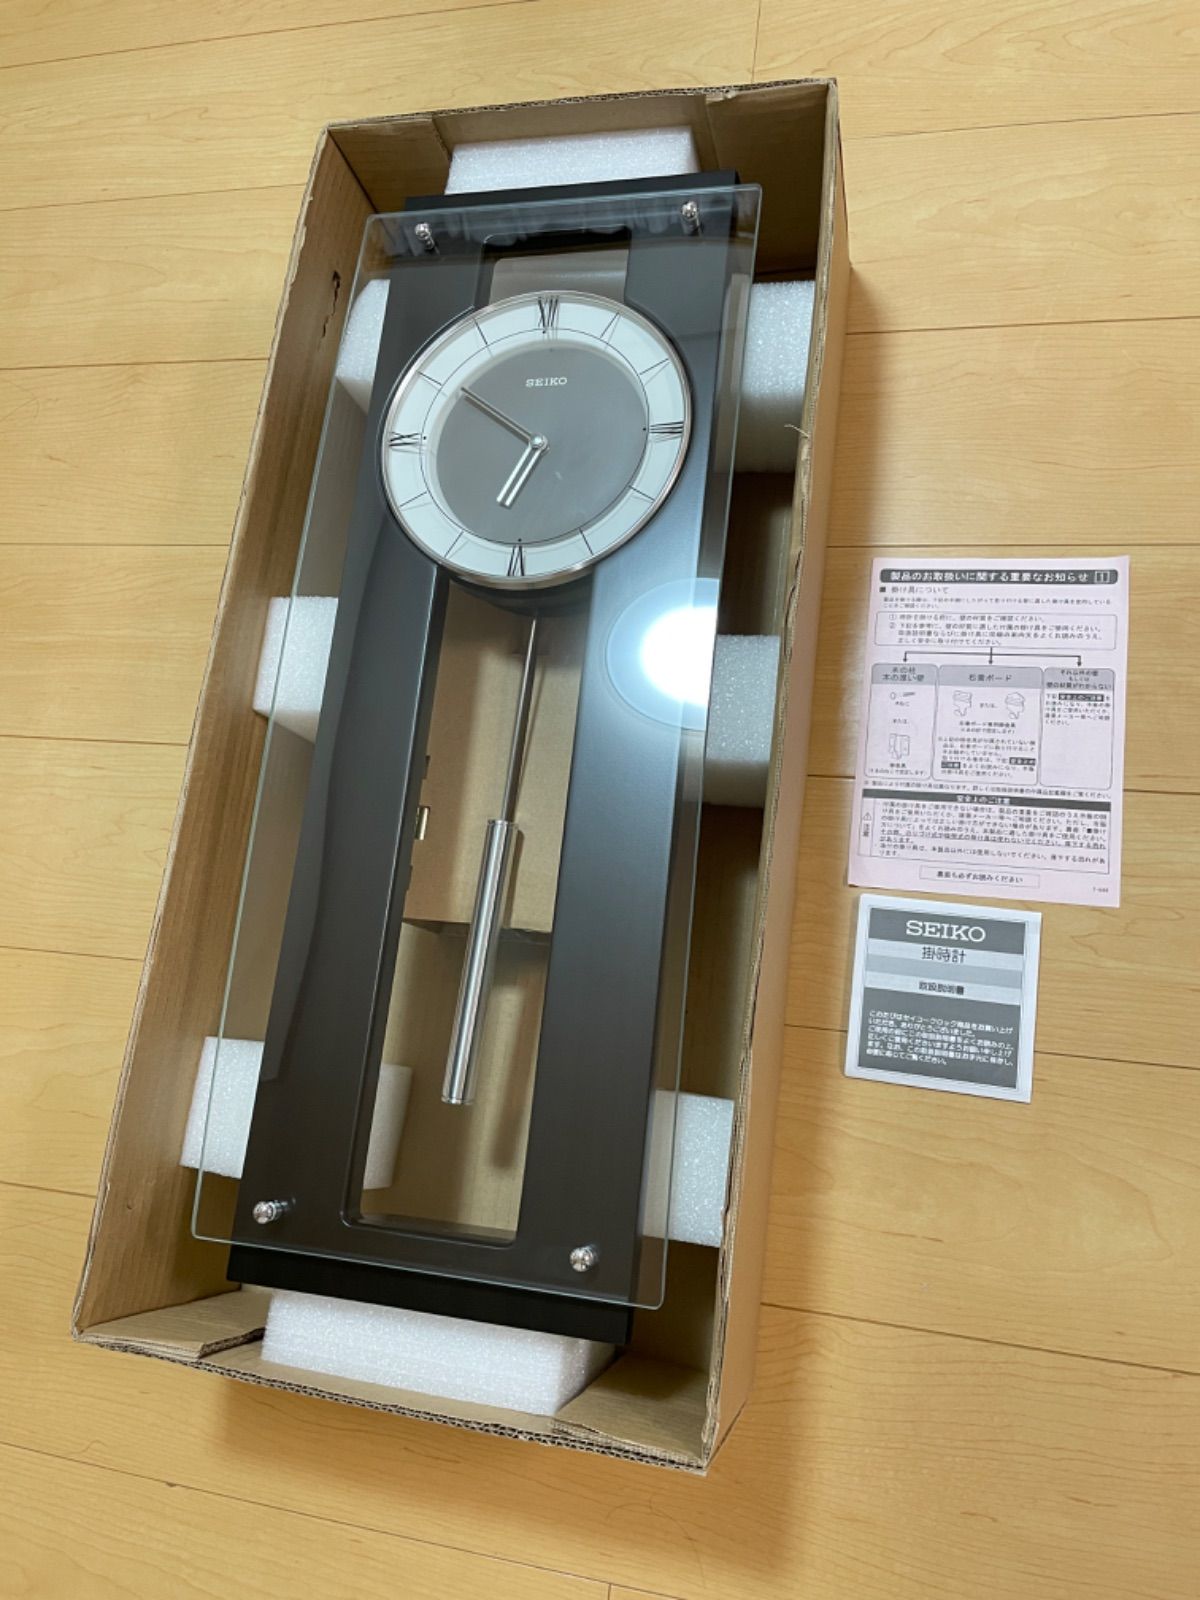 【通販限定】訳あり品 セイコー高級掛時計 定価25,000円 PH450B アナログ